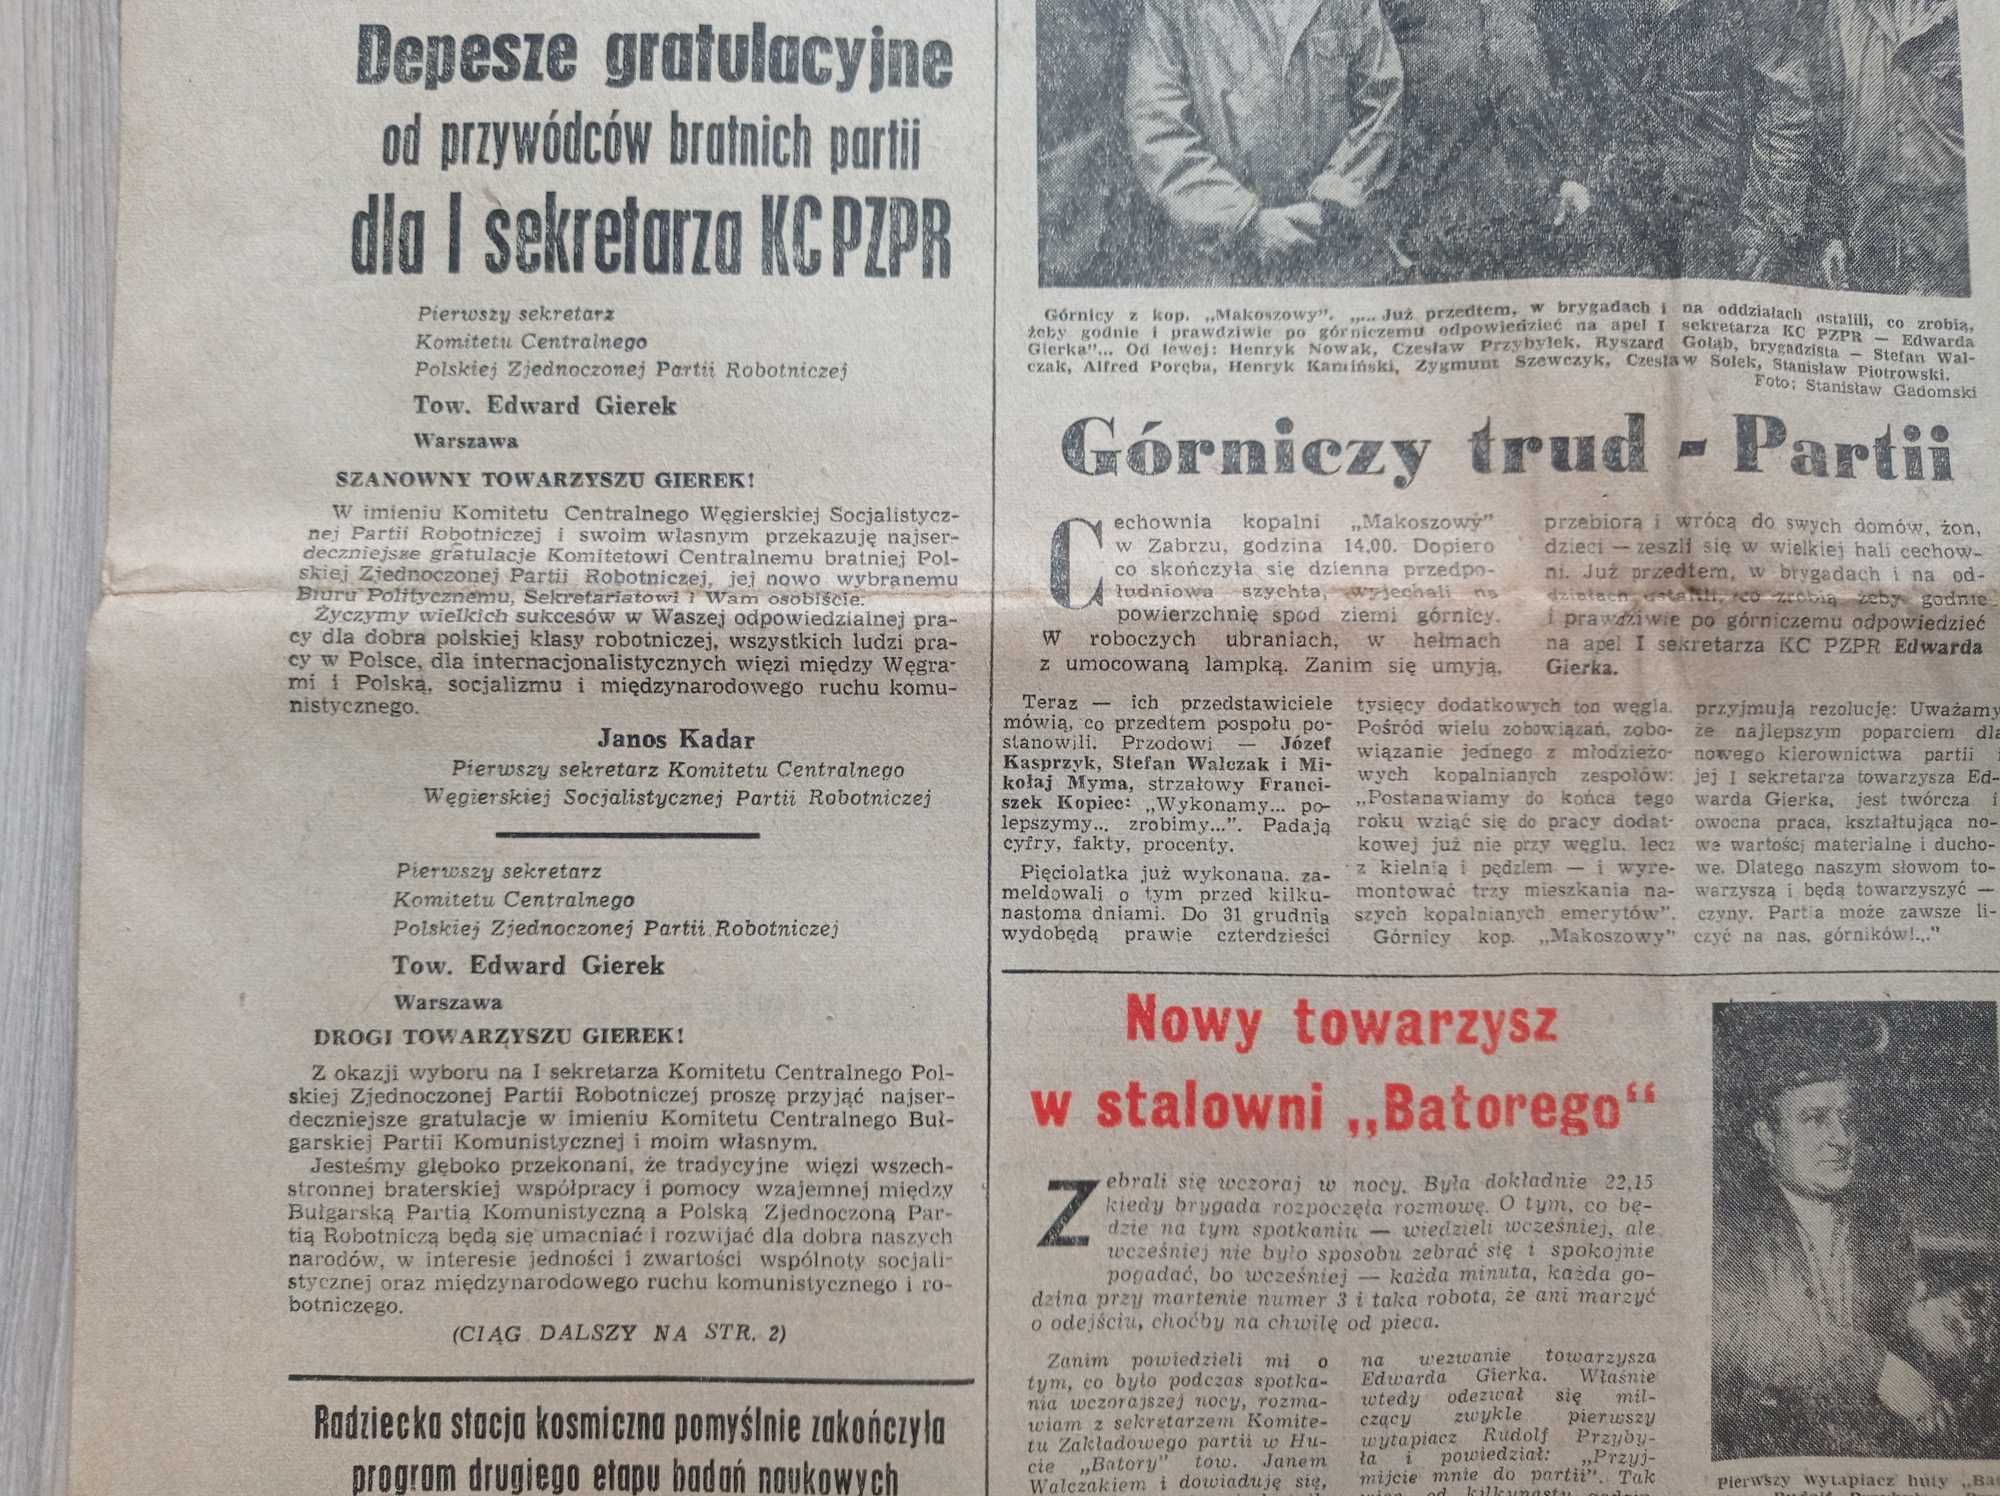 Trybuna robotnicza 304 / 1970